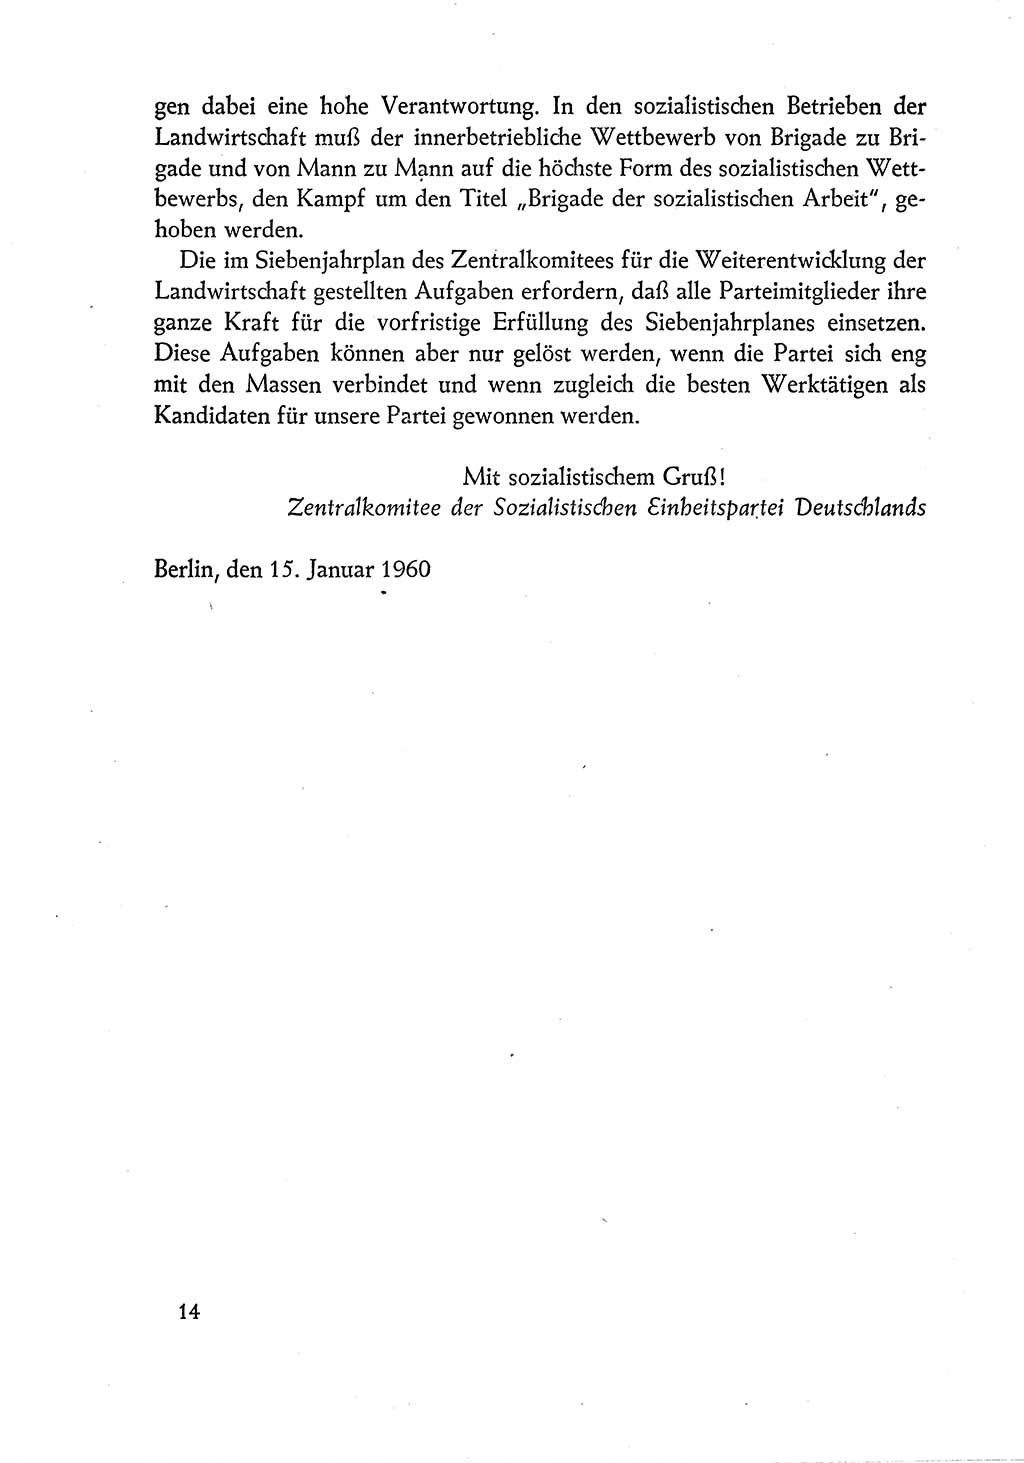 Dokumente der Sozialistischen Einheitspartei Deutschlands (SED) [Deutsche Demokratische Republik (DDR)] 1960-1961, Seite 14 (Dok. SED DDR 1960-1961, S. 14)